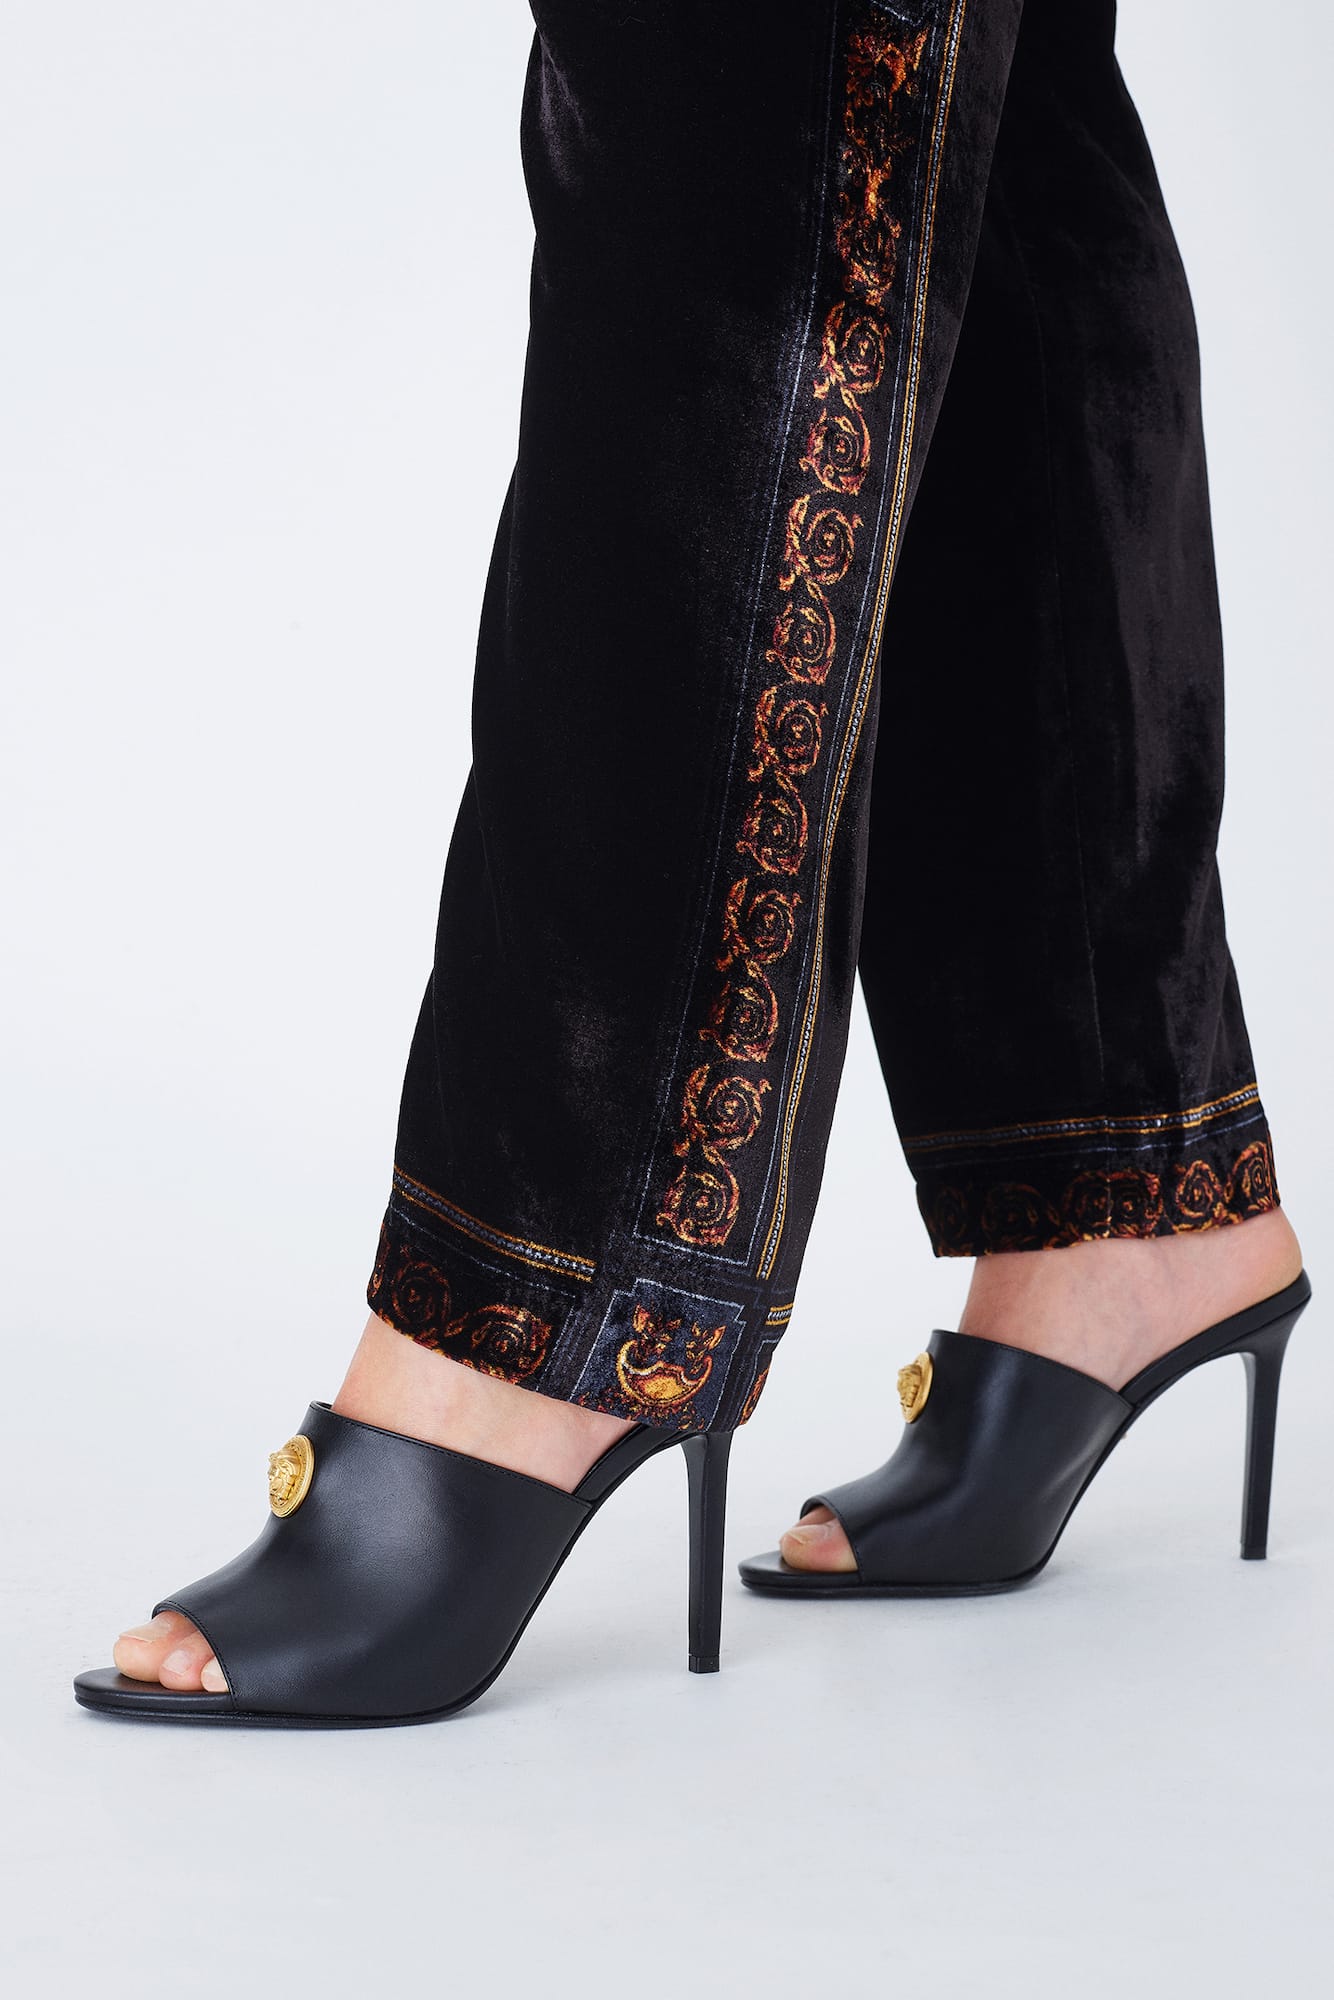 versace heels 2019